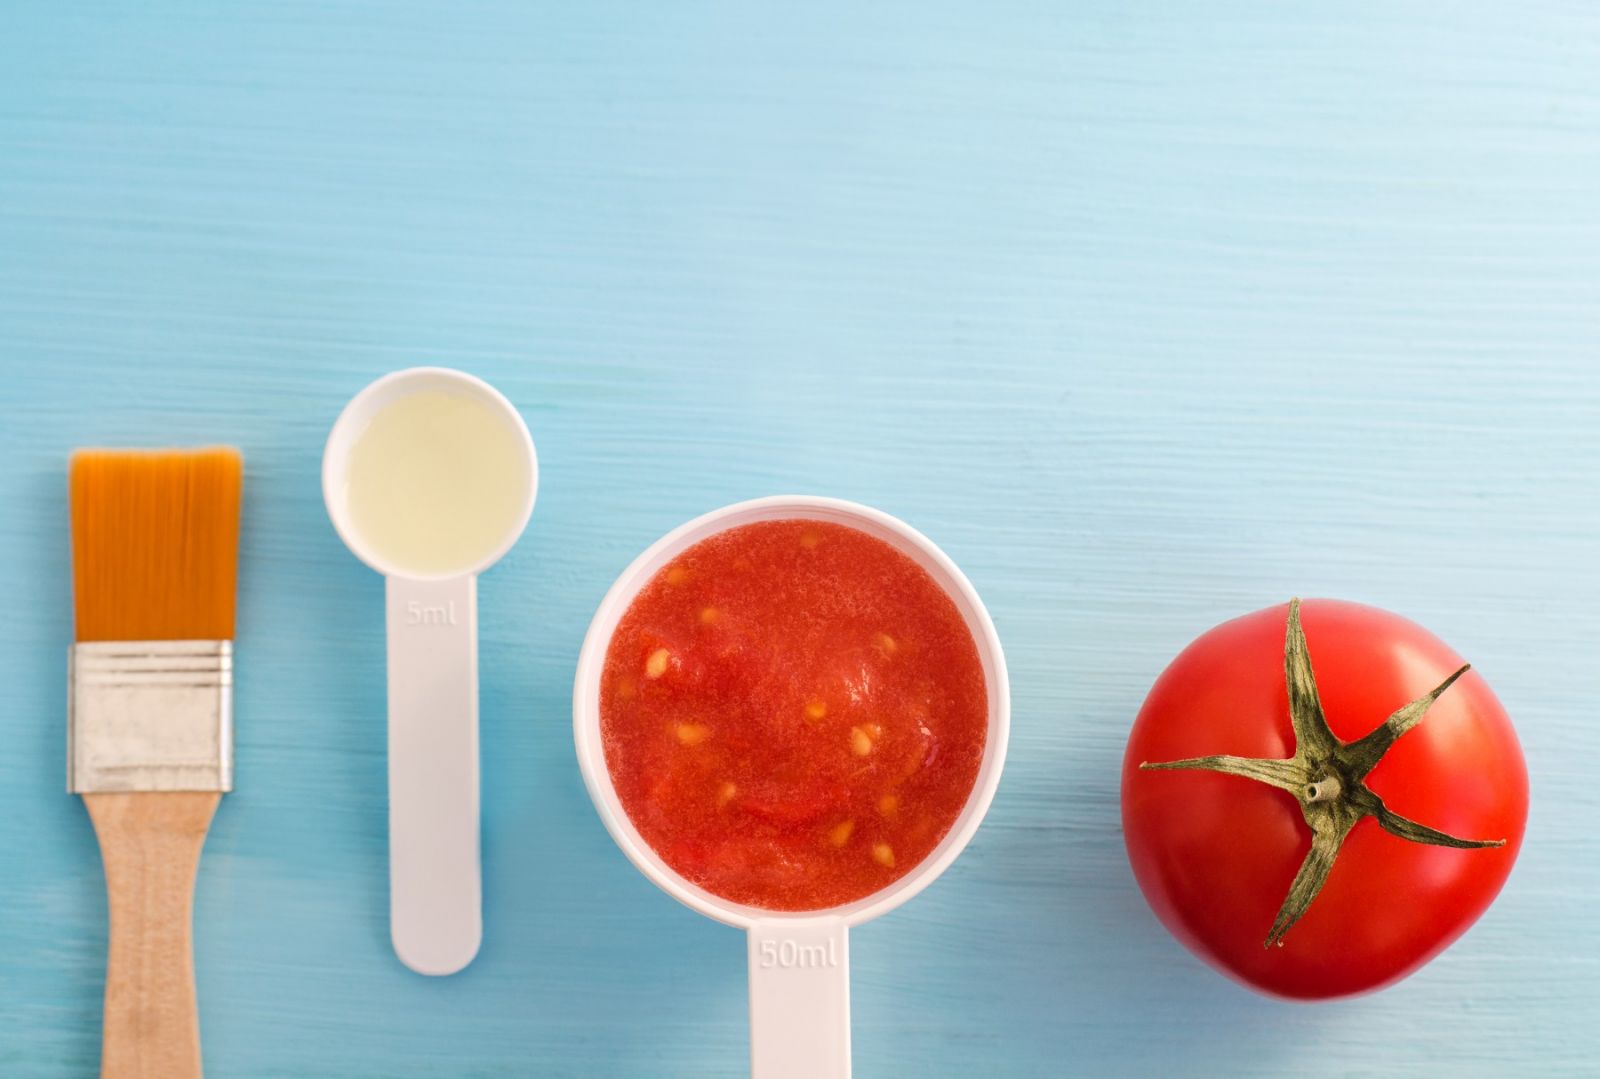 Cà chua là nguyên liệu tự nhiên với những cách làm trắng da mặt hiệu quả tại nhà